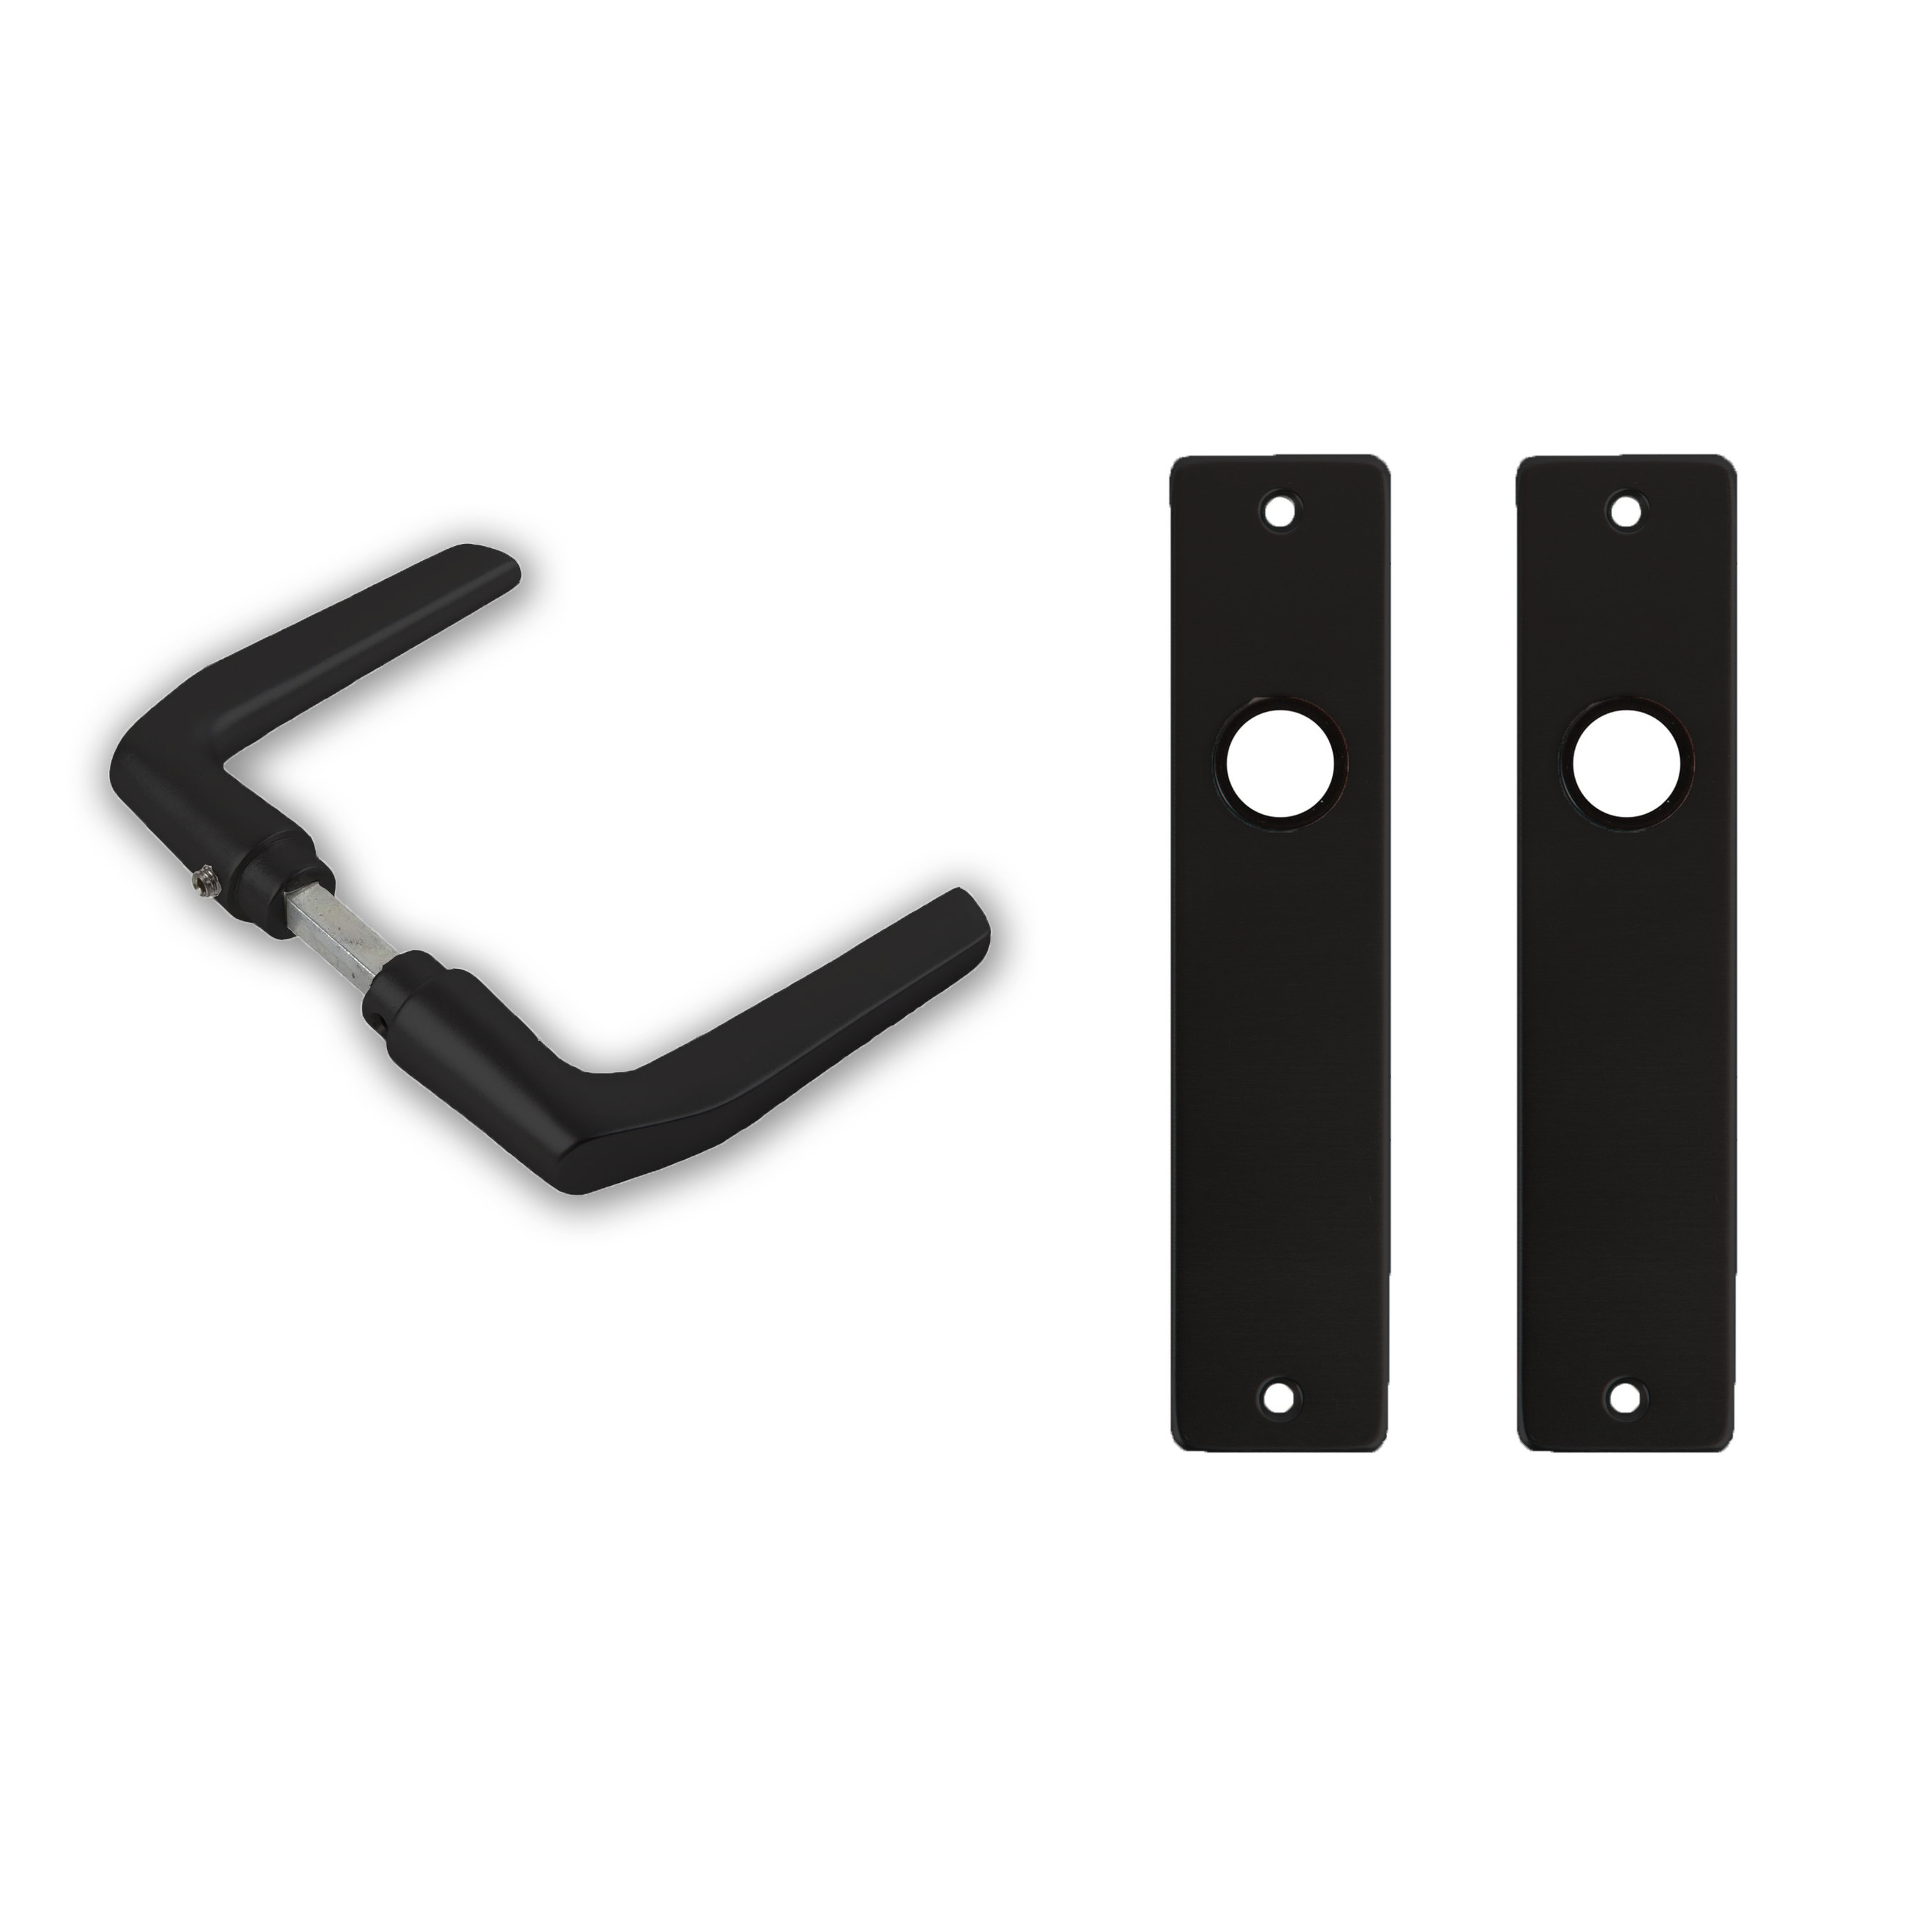 5x paar deurkrukset-deurgarnituur zwart met zwarte deurklinken en deurschilden